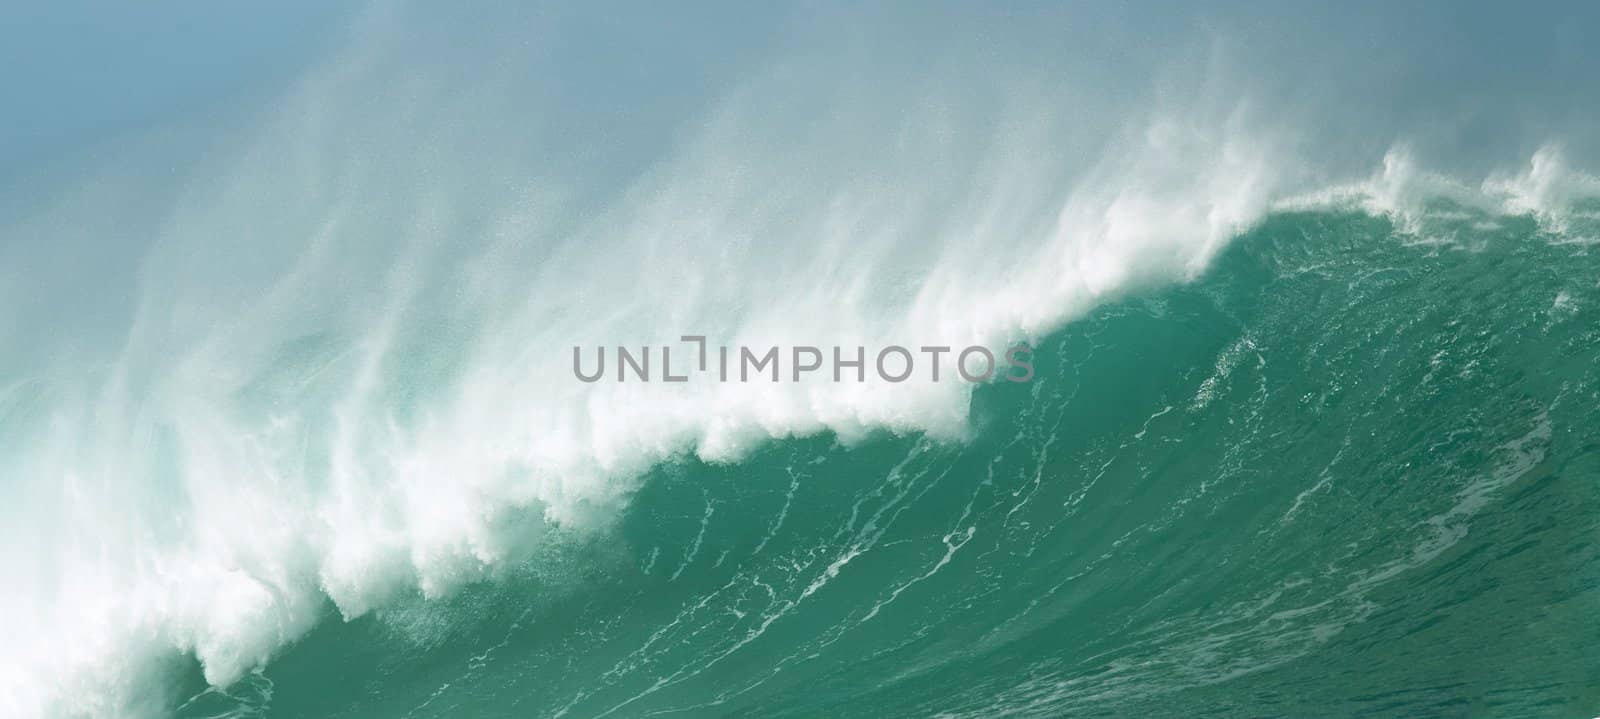 crashing wave action, aquatic, background